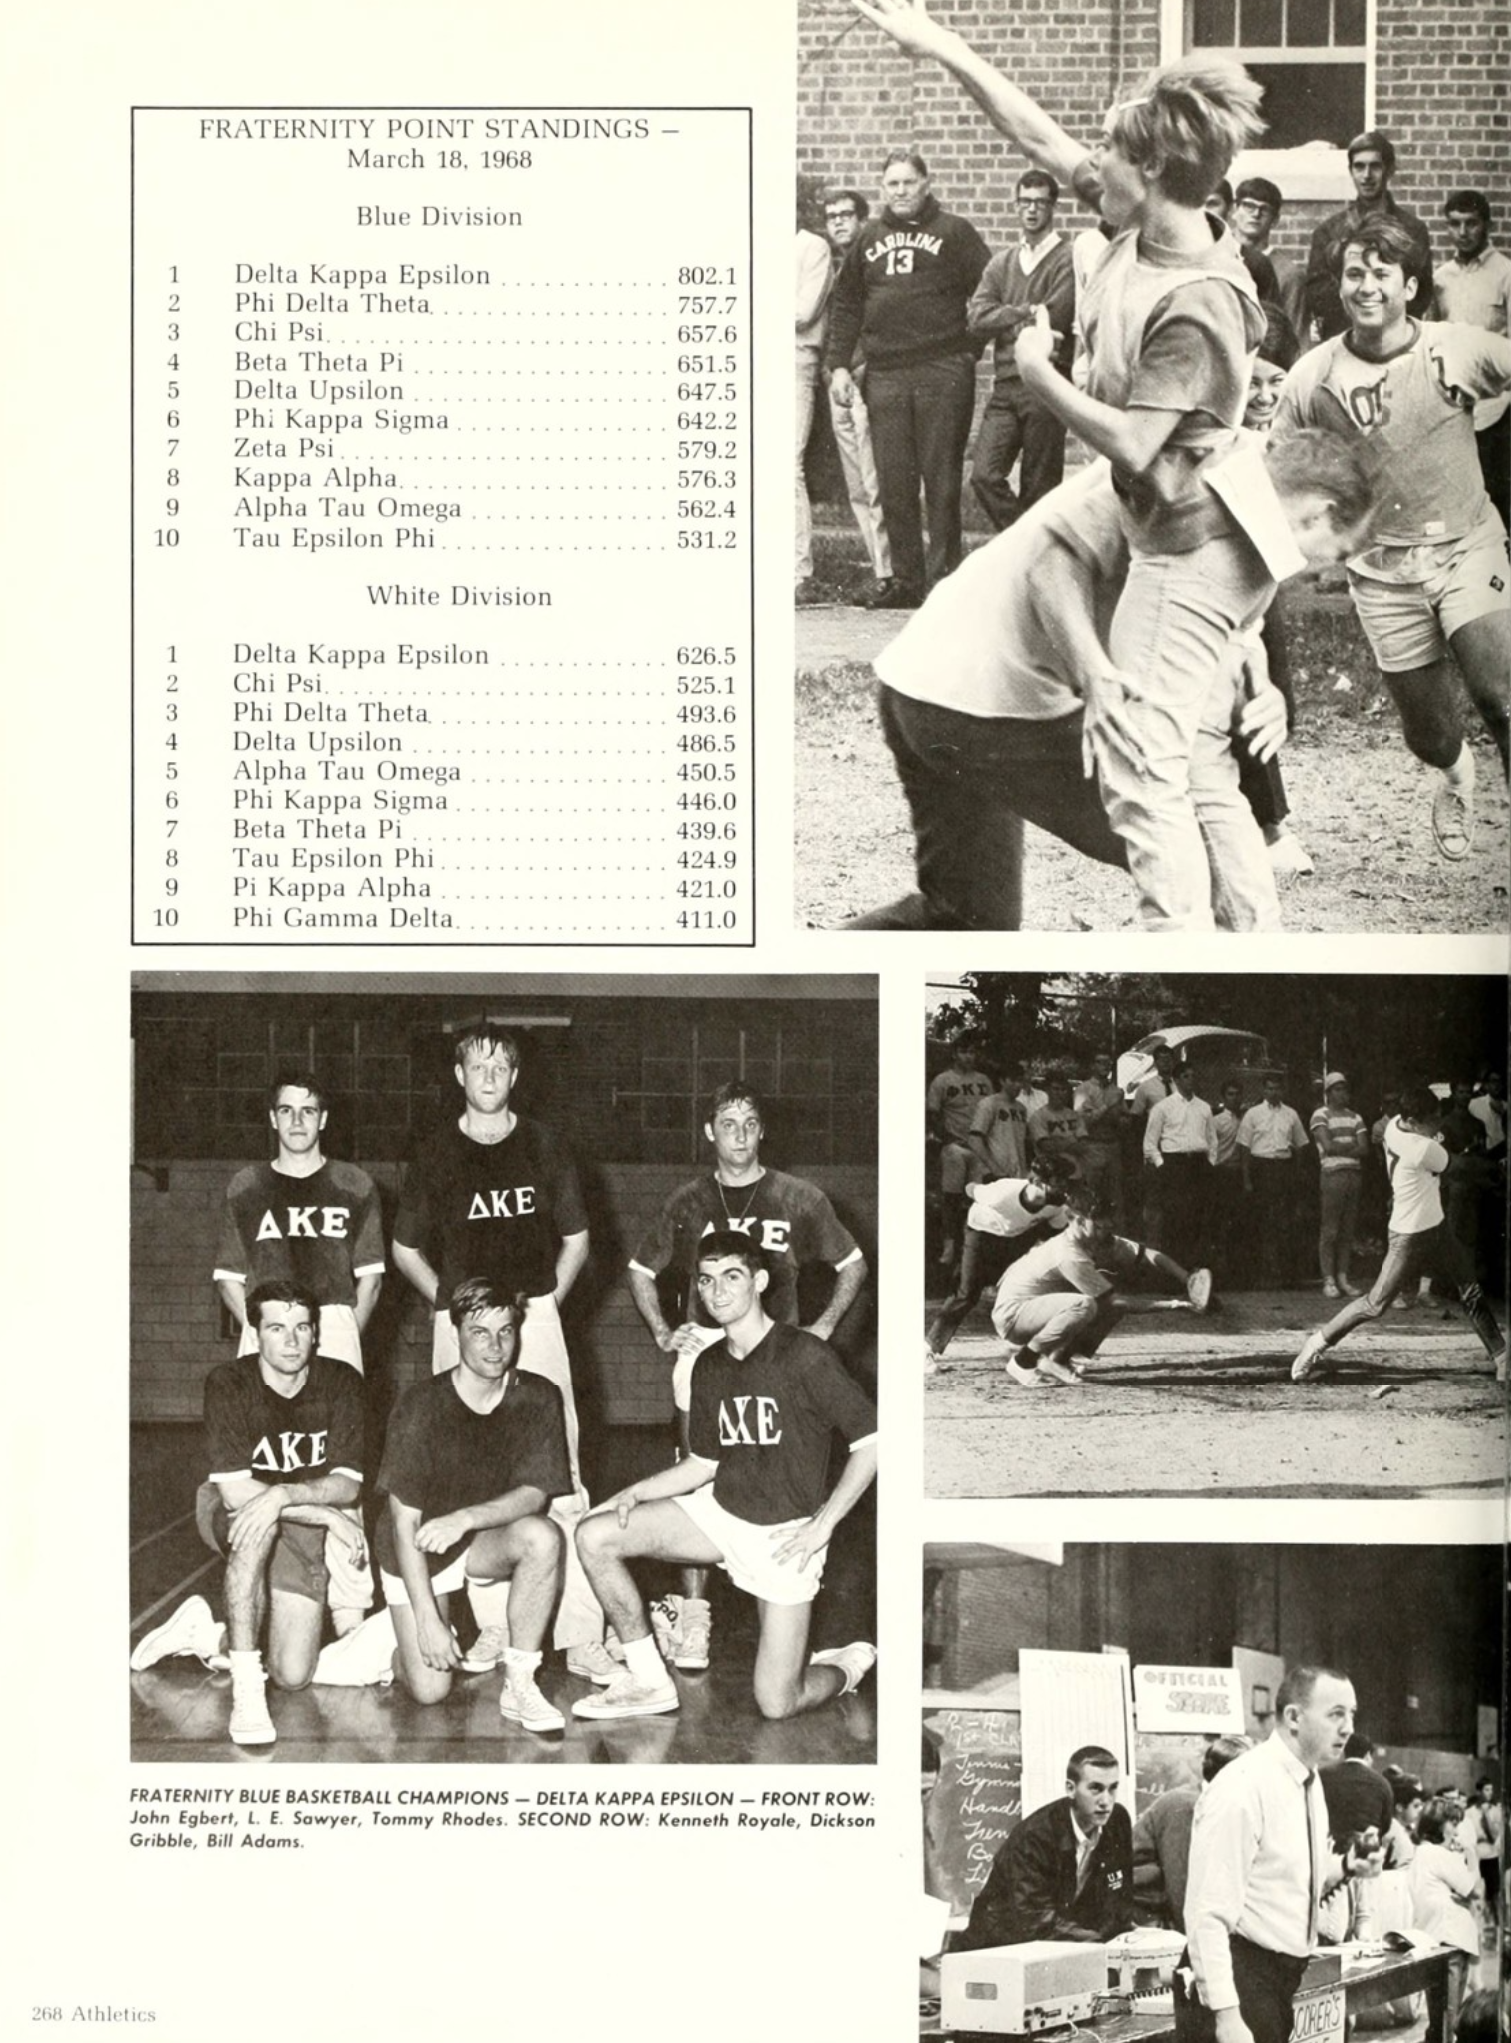 Throwback to Delta Kappa Epsilon in 1968